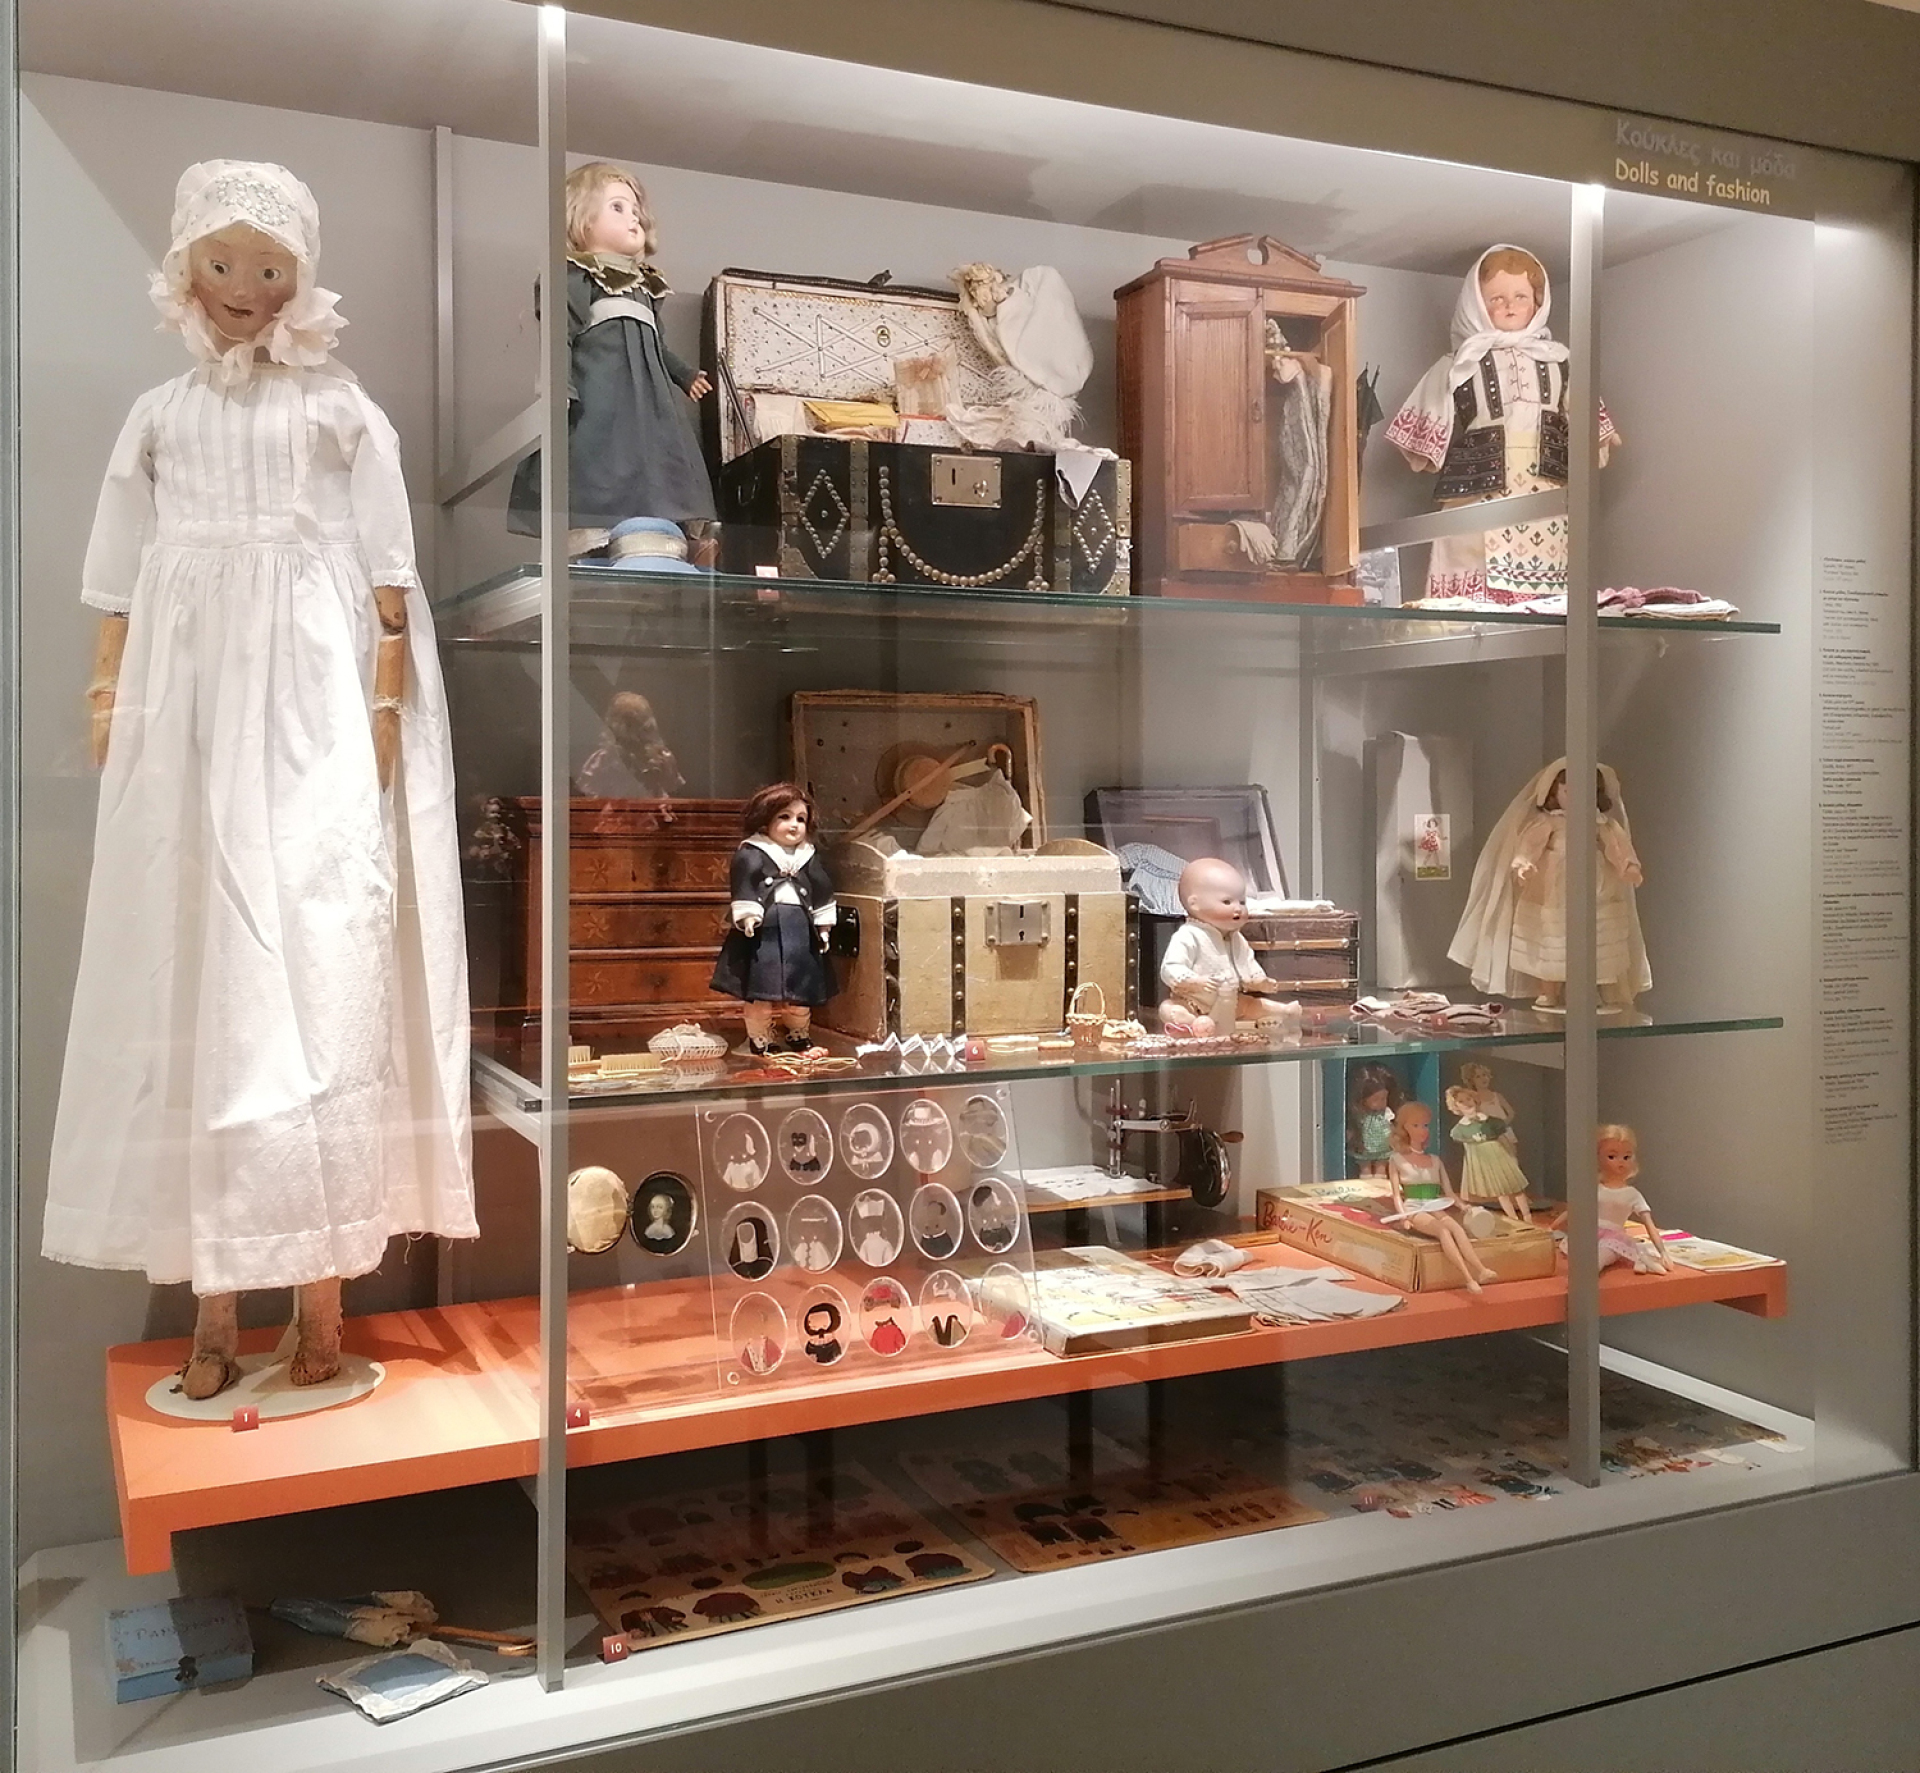 Μουσείο Παιχνιδιών - Μπενάκη, Κούκλες και μόδα με την Blouette και την γκαρνταρόμπα της